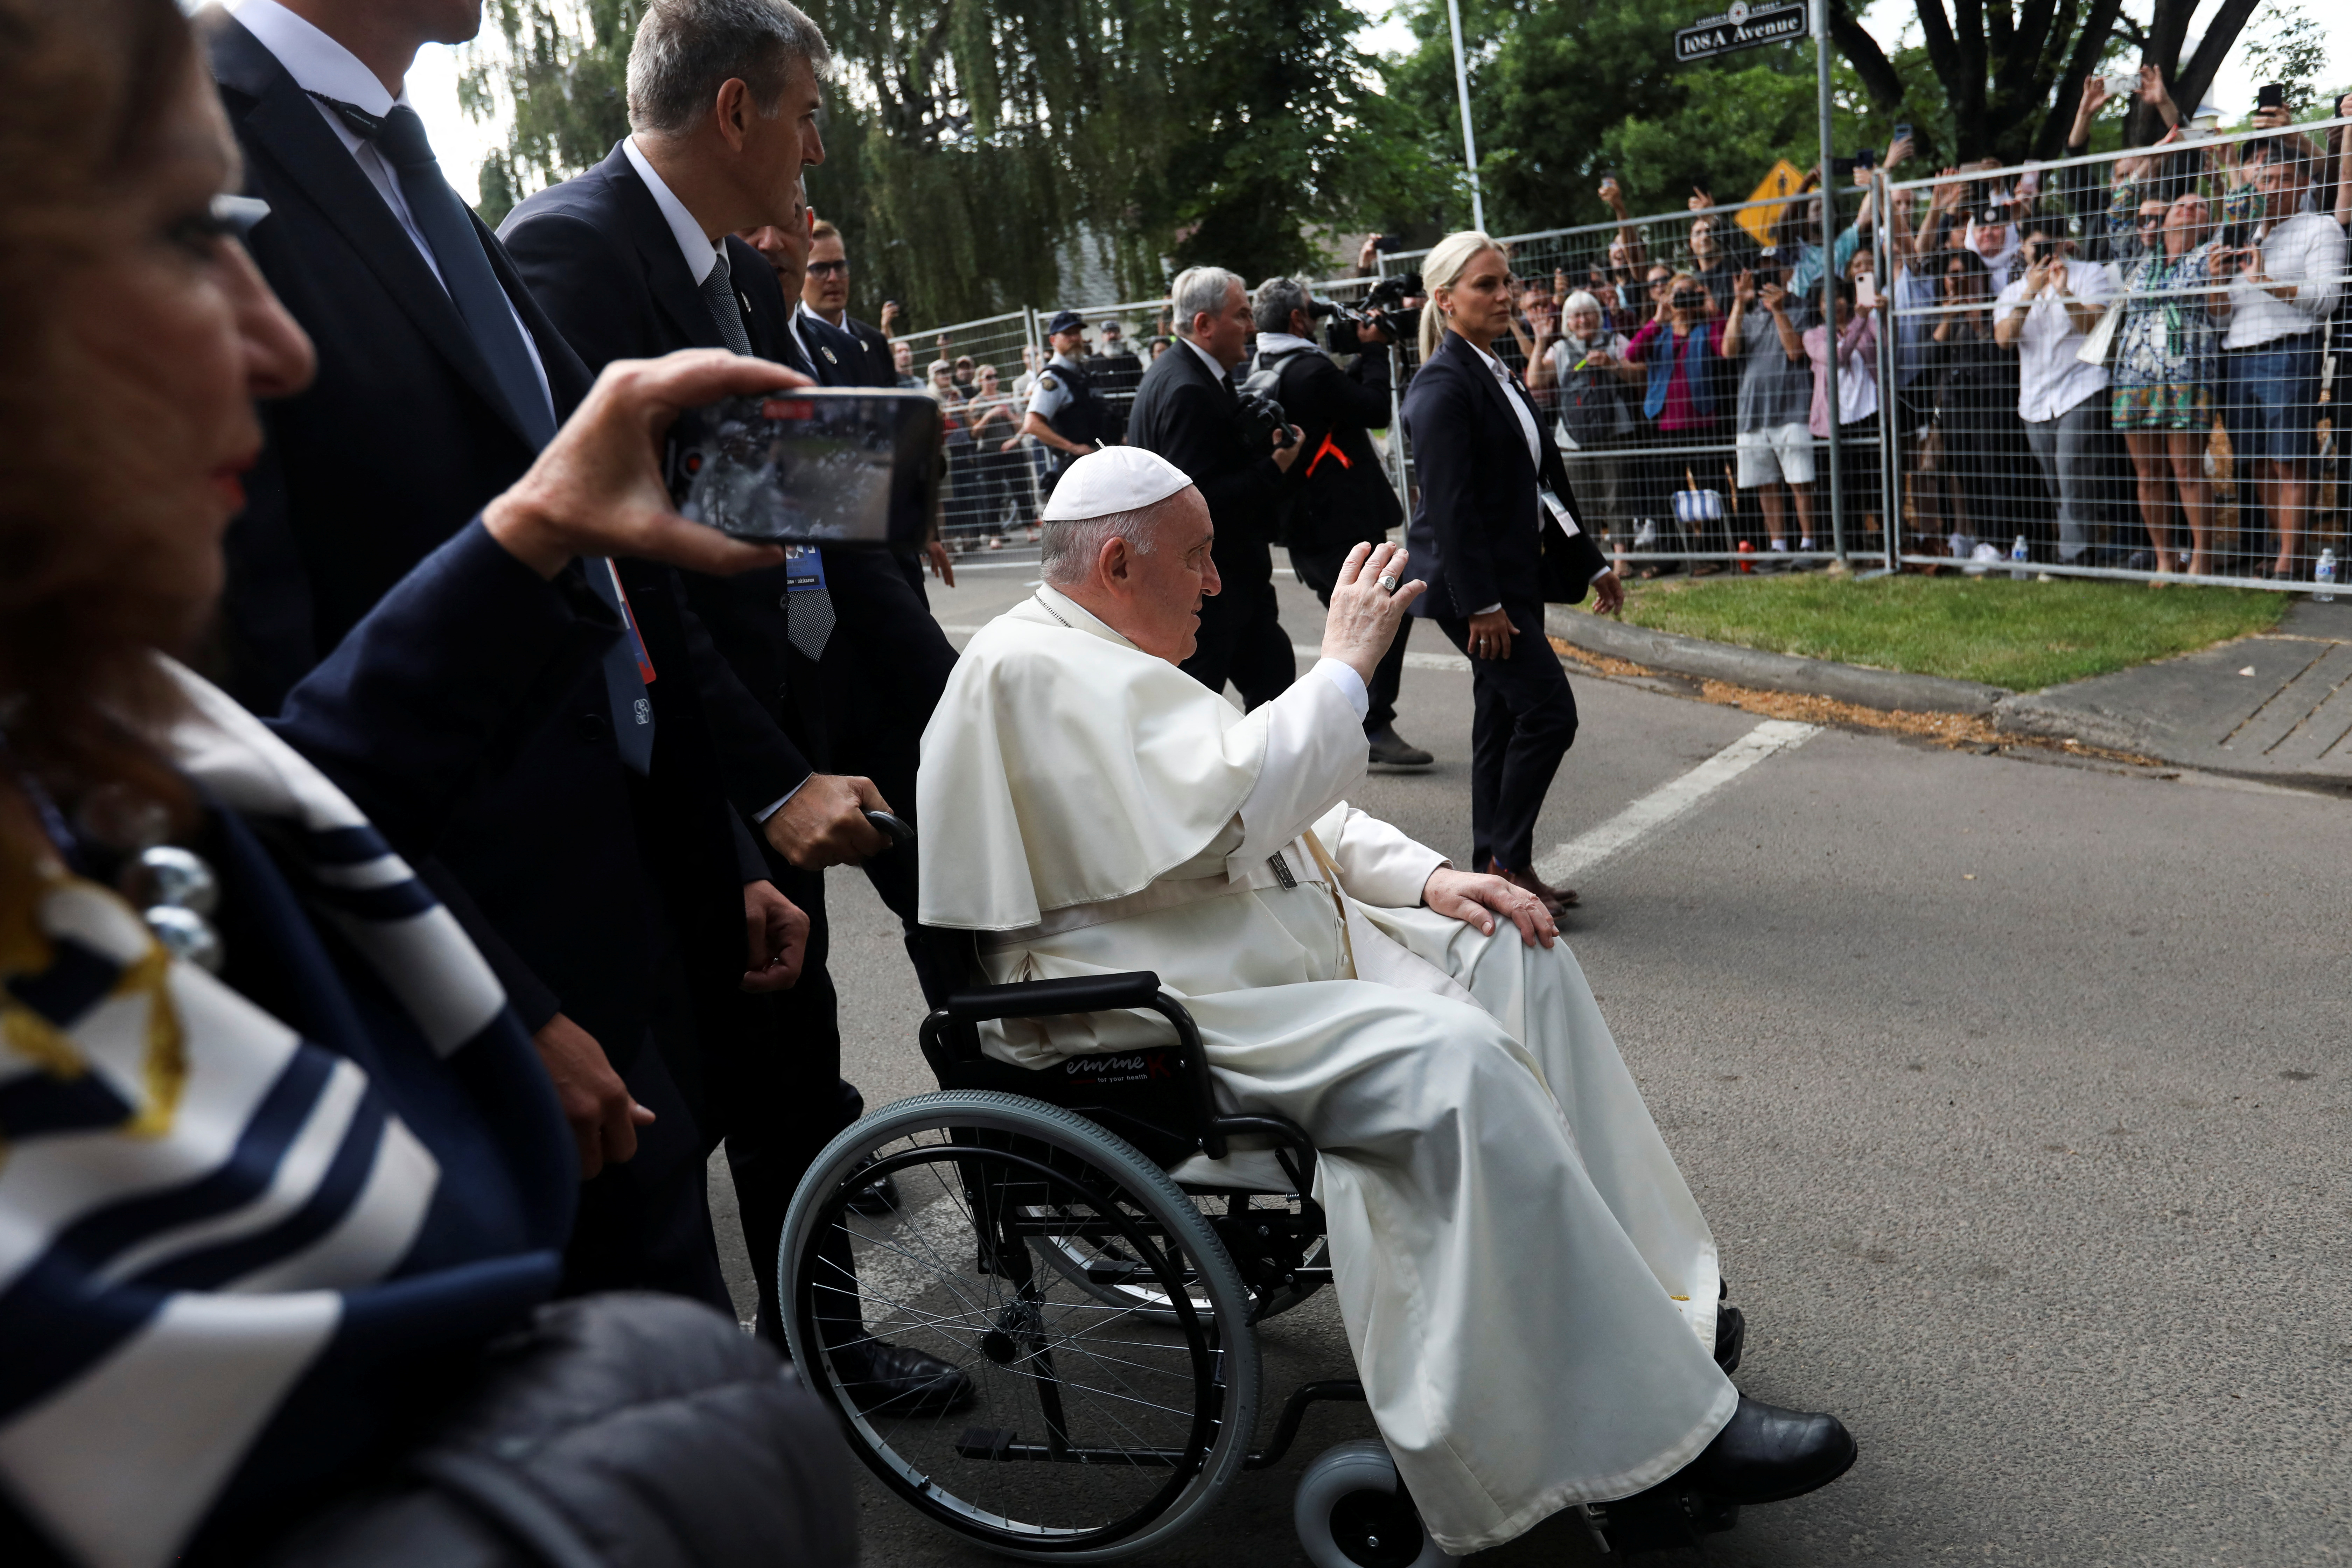 El Papa es trasladado en silla de ruedas debido a su lesión de rodilla, que le impide caminar grandes distancias (REUTERS/Amber Bracken)